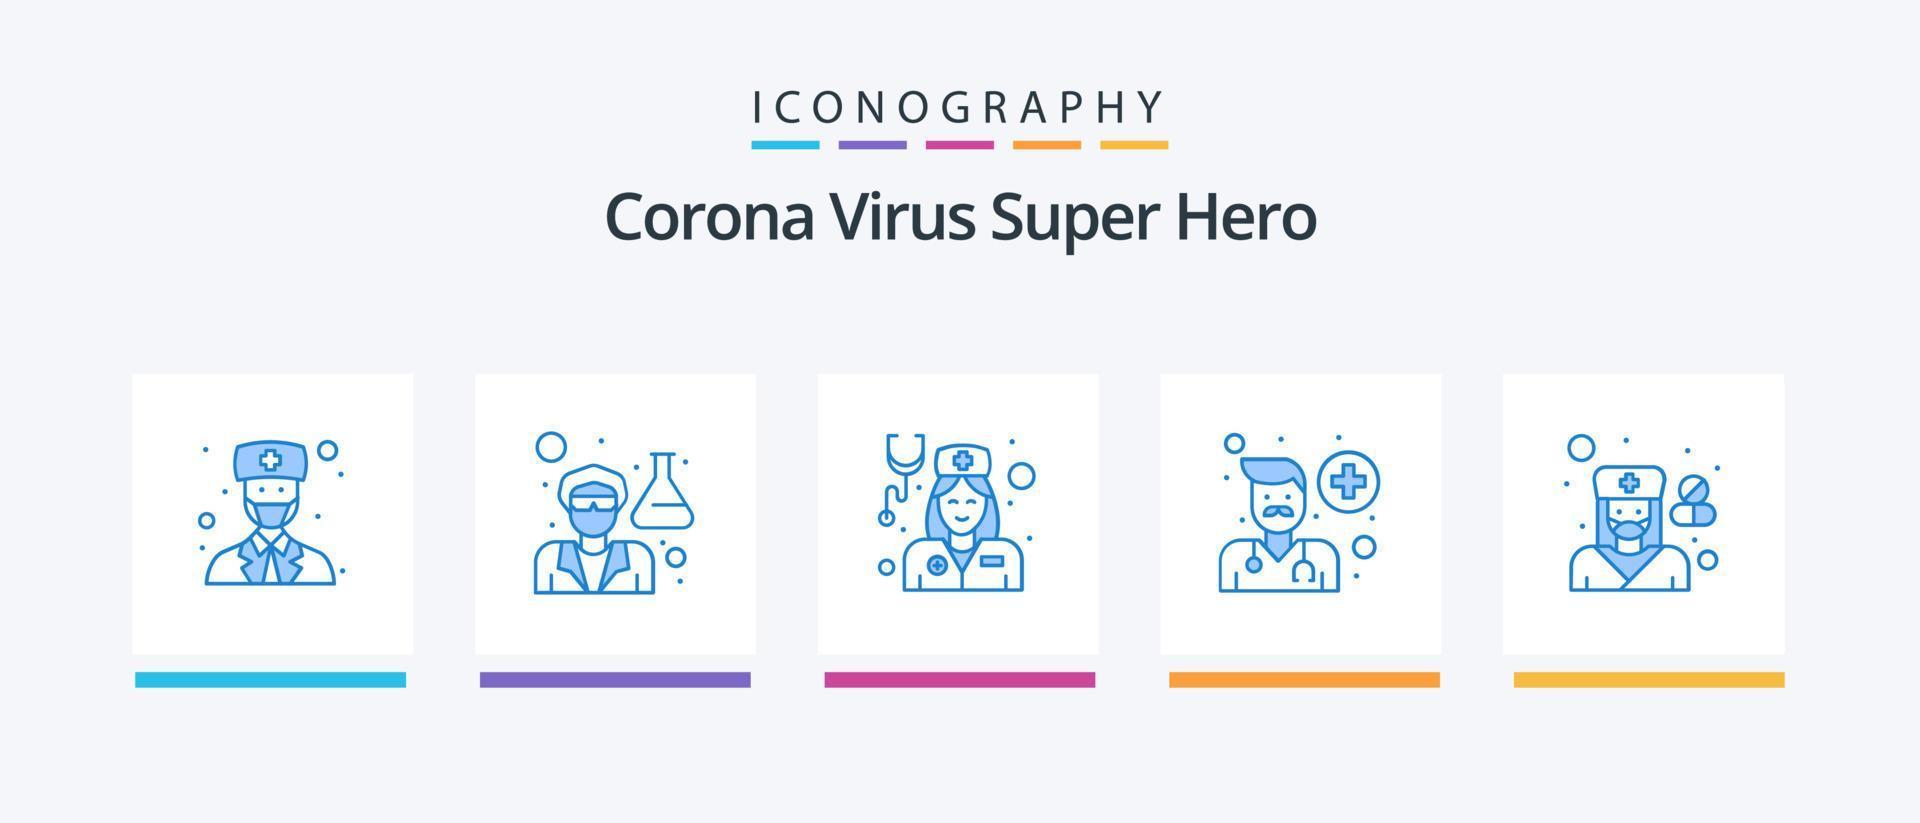 pacote de ícones do super-herói azul 5 do vírus corona, incluindo feminino. pessoas. doutor. homem. avatar. design de ícones criativos vetor